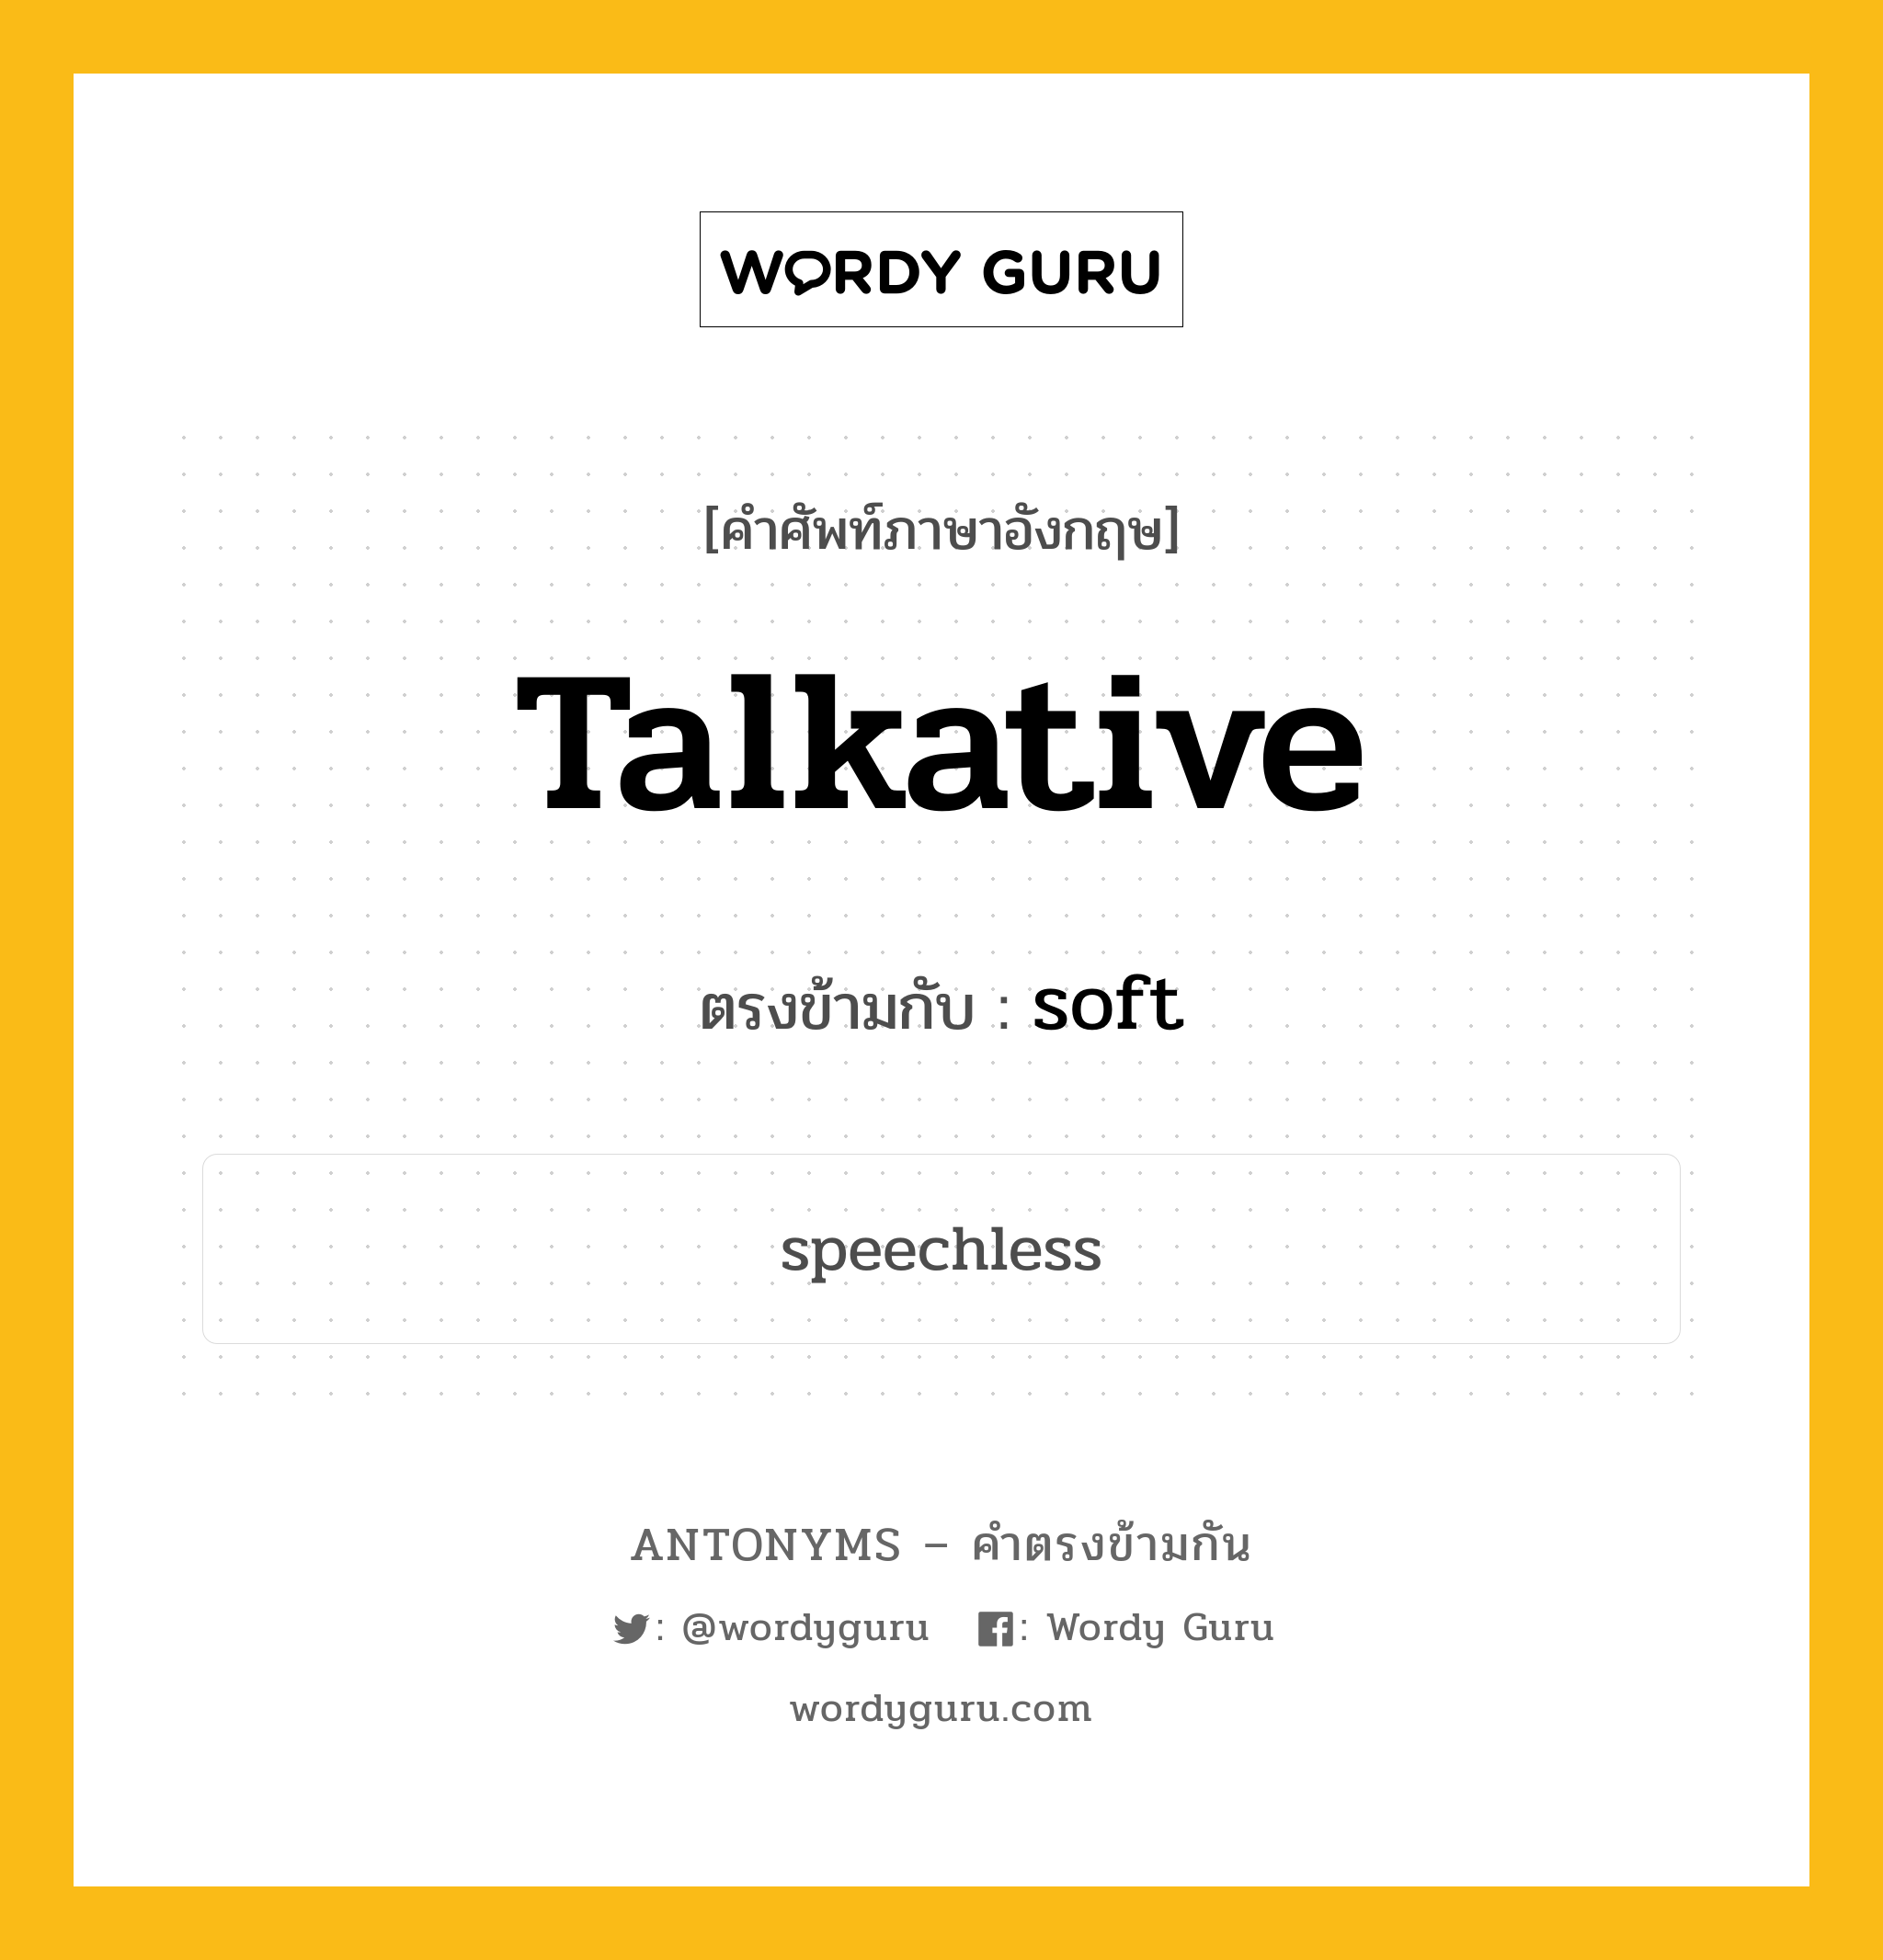 talkative เป็นคำตรงข้ามกับคำไหนบ้าง?, คำศัพท์ภาษาอังกฤษ talkative ตรงข้ามกับ soft หมวด soft